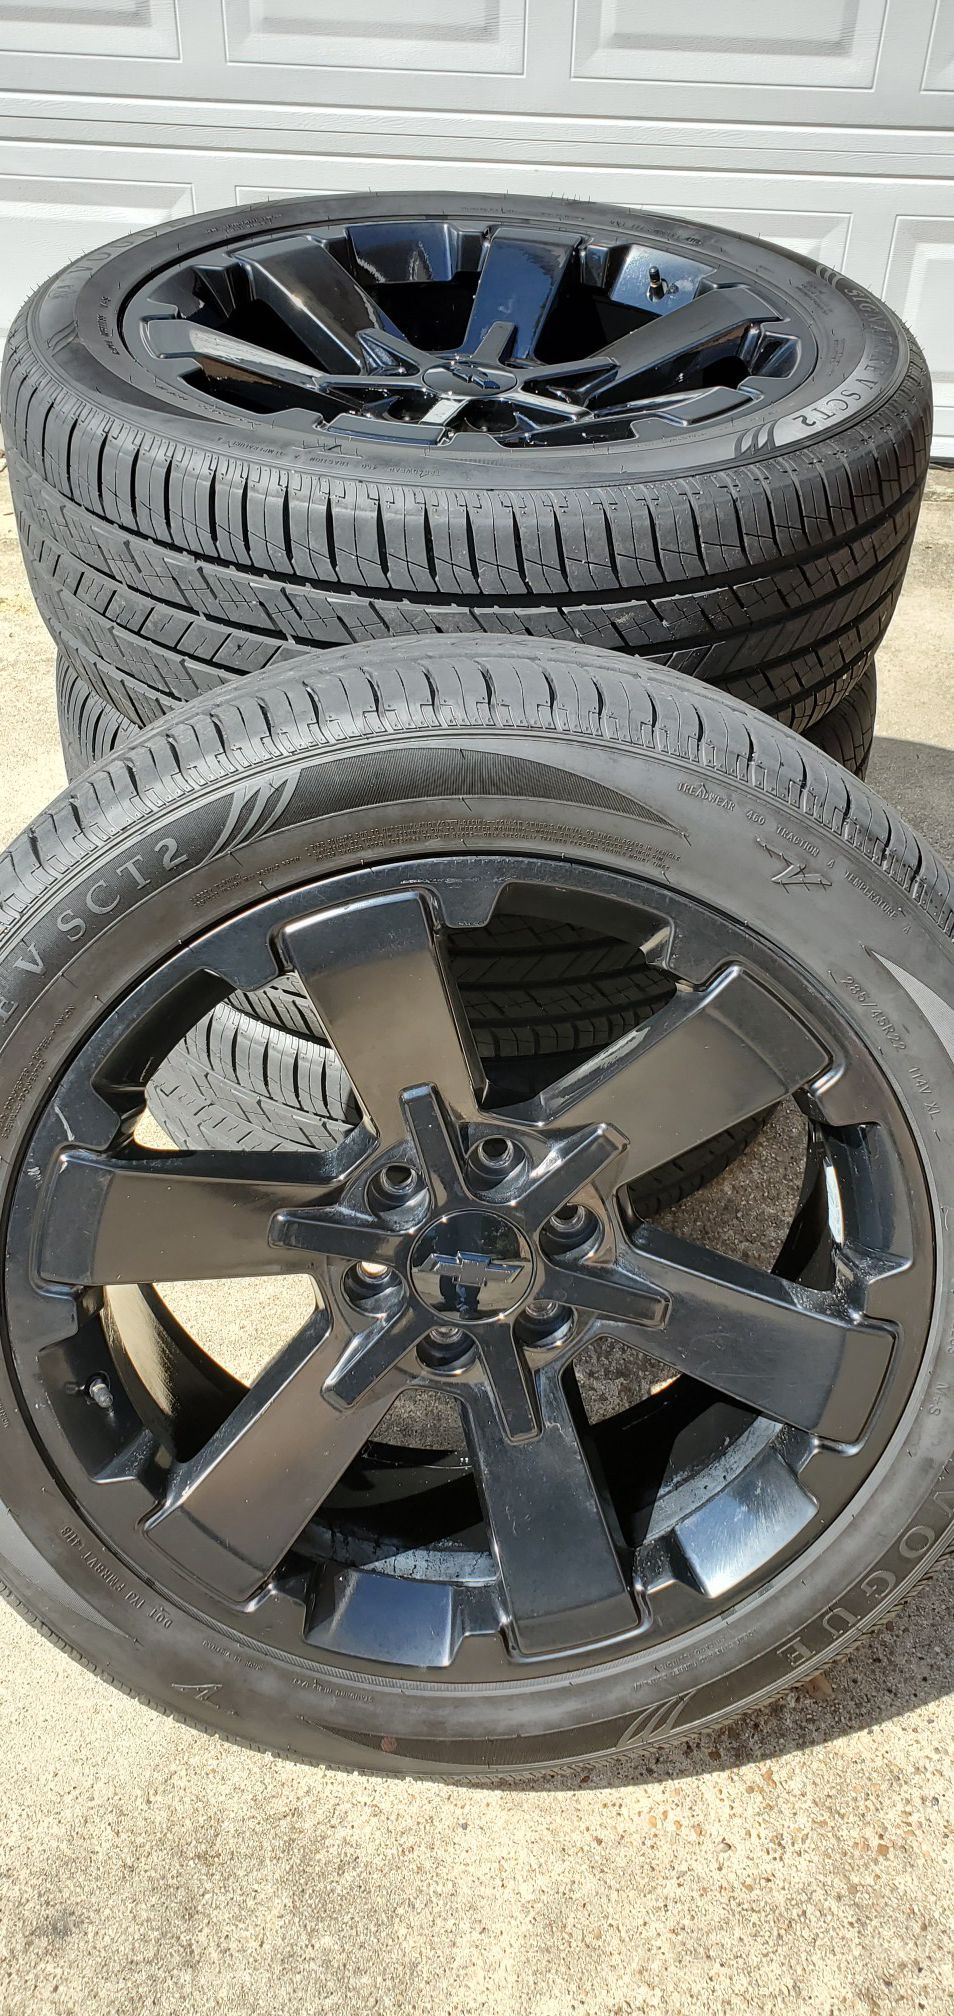 22" Chevy Silverado wheels and tires